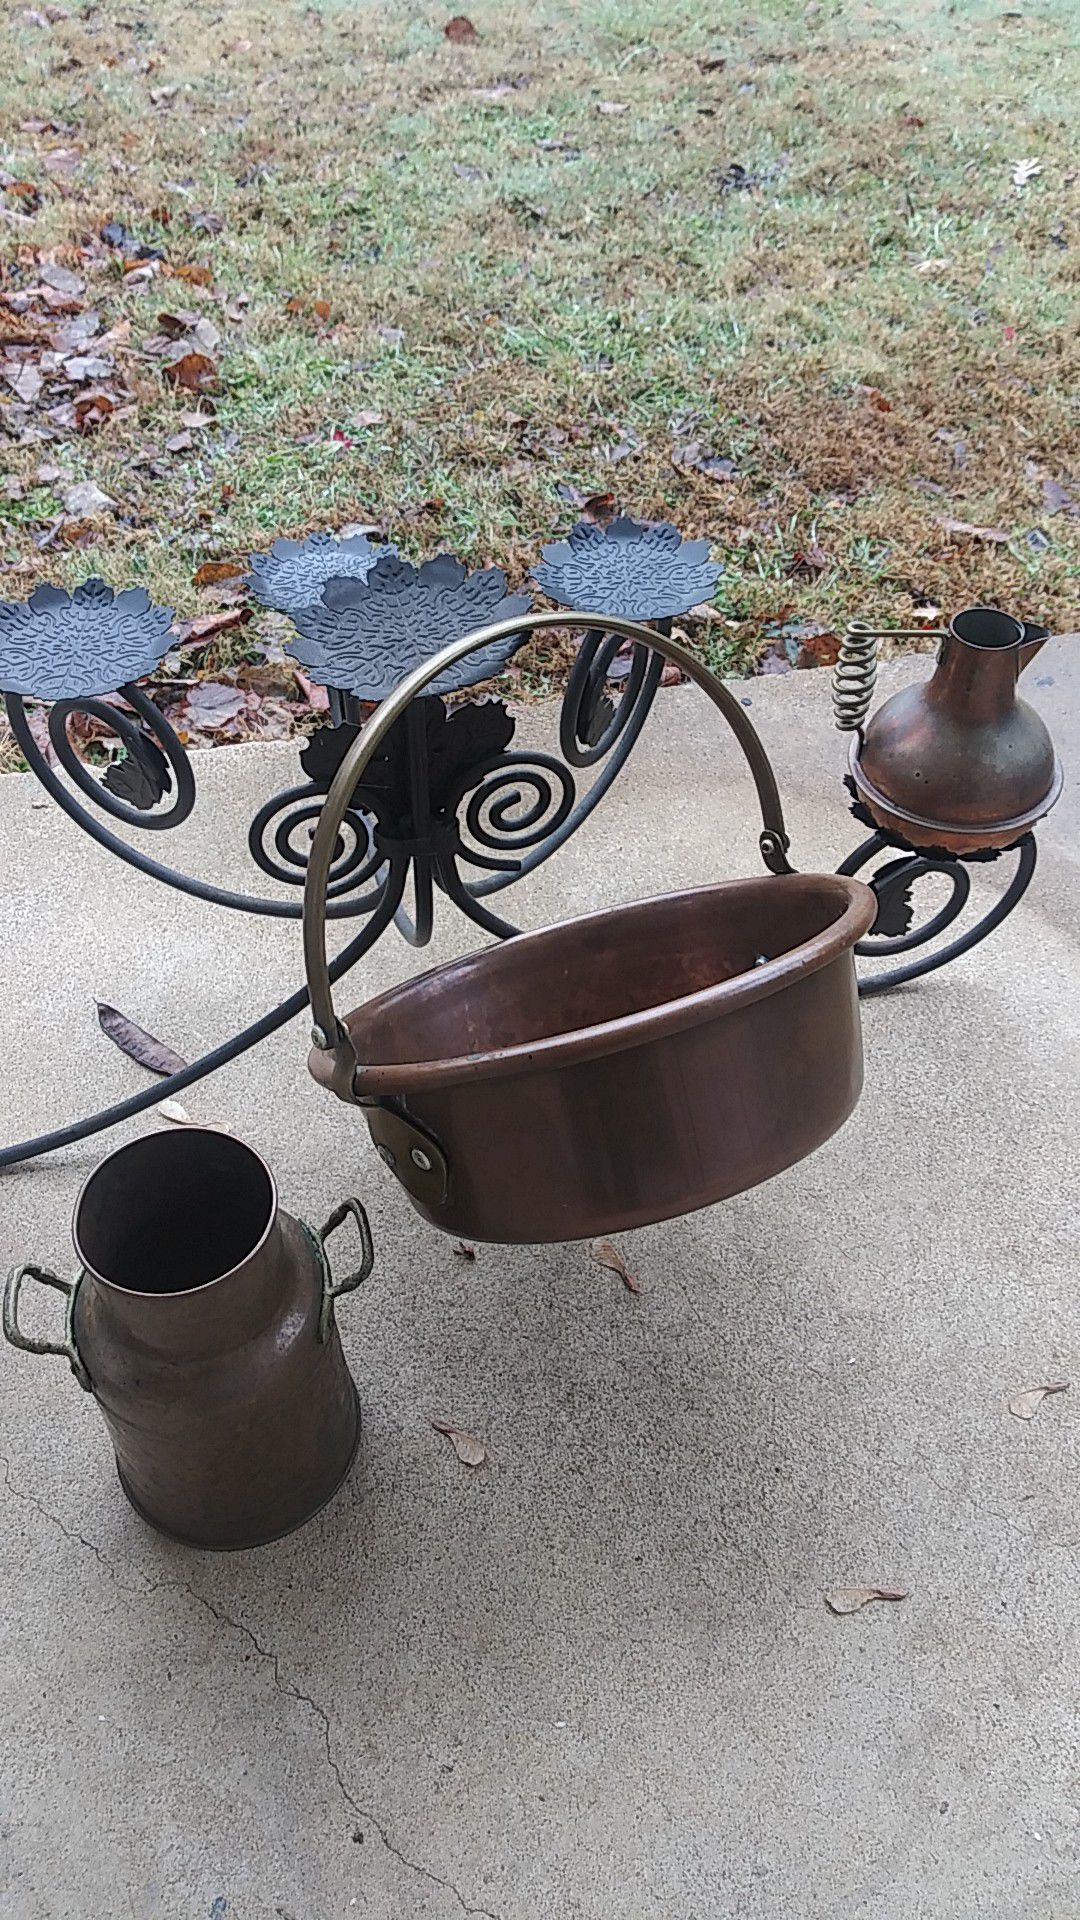 Lot copper 3 pc pot jug brass handles vintage